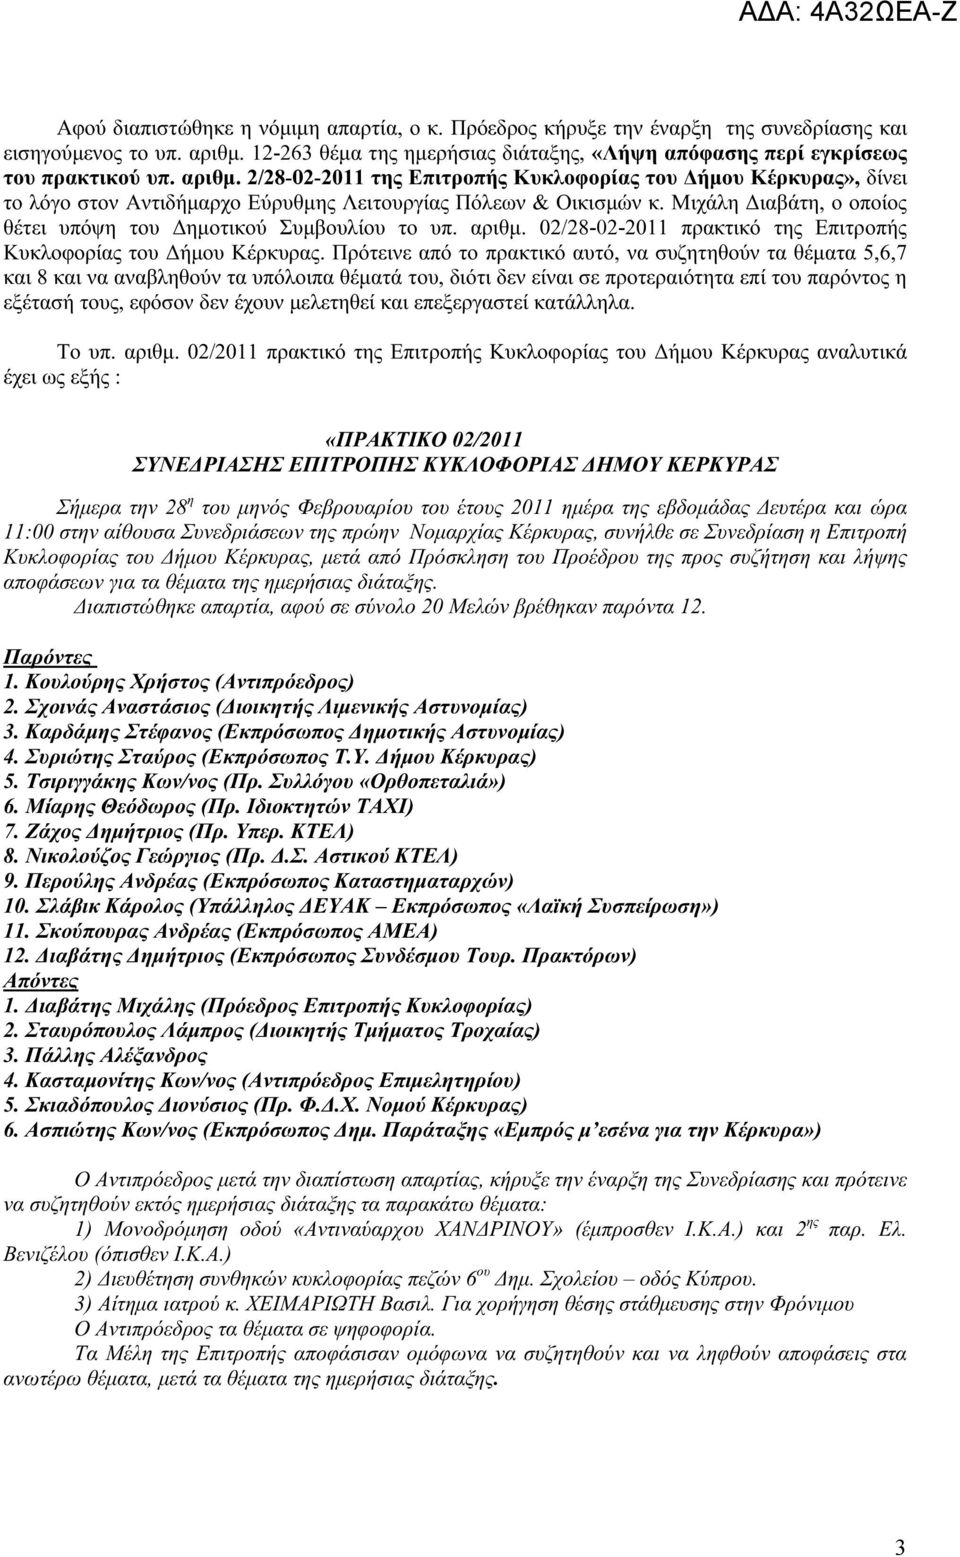 Μιχάλη Διαβάτη, ο οποίος θέτει υπόψη του Δημοτικού Συμβουλίου το υπ. αριθμ. 02/28-02-2011 πρακτικό της Επιτροπής Κυκλοφορίας του Δήμου Κέρκυρας.